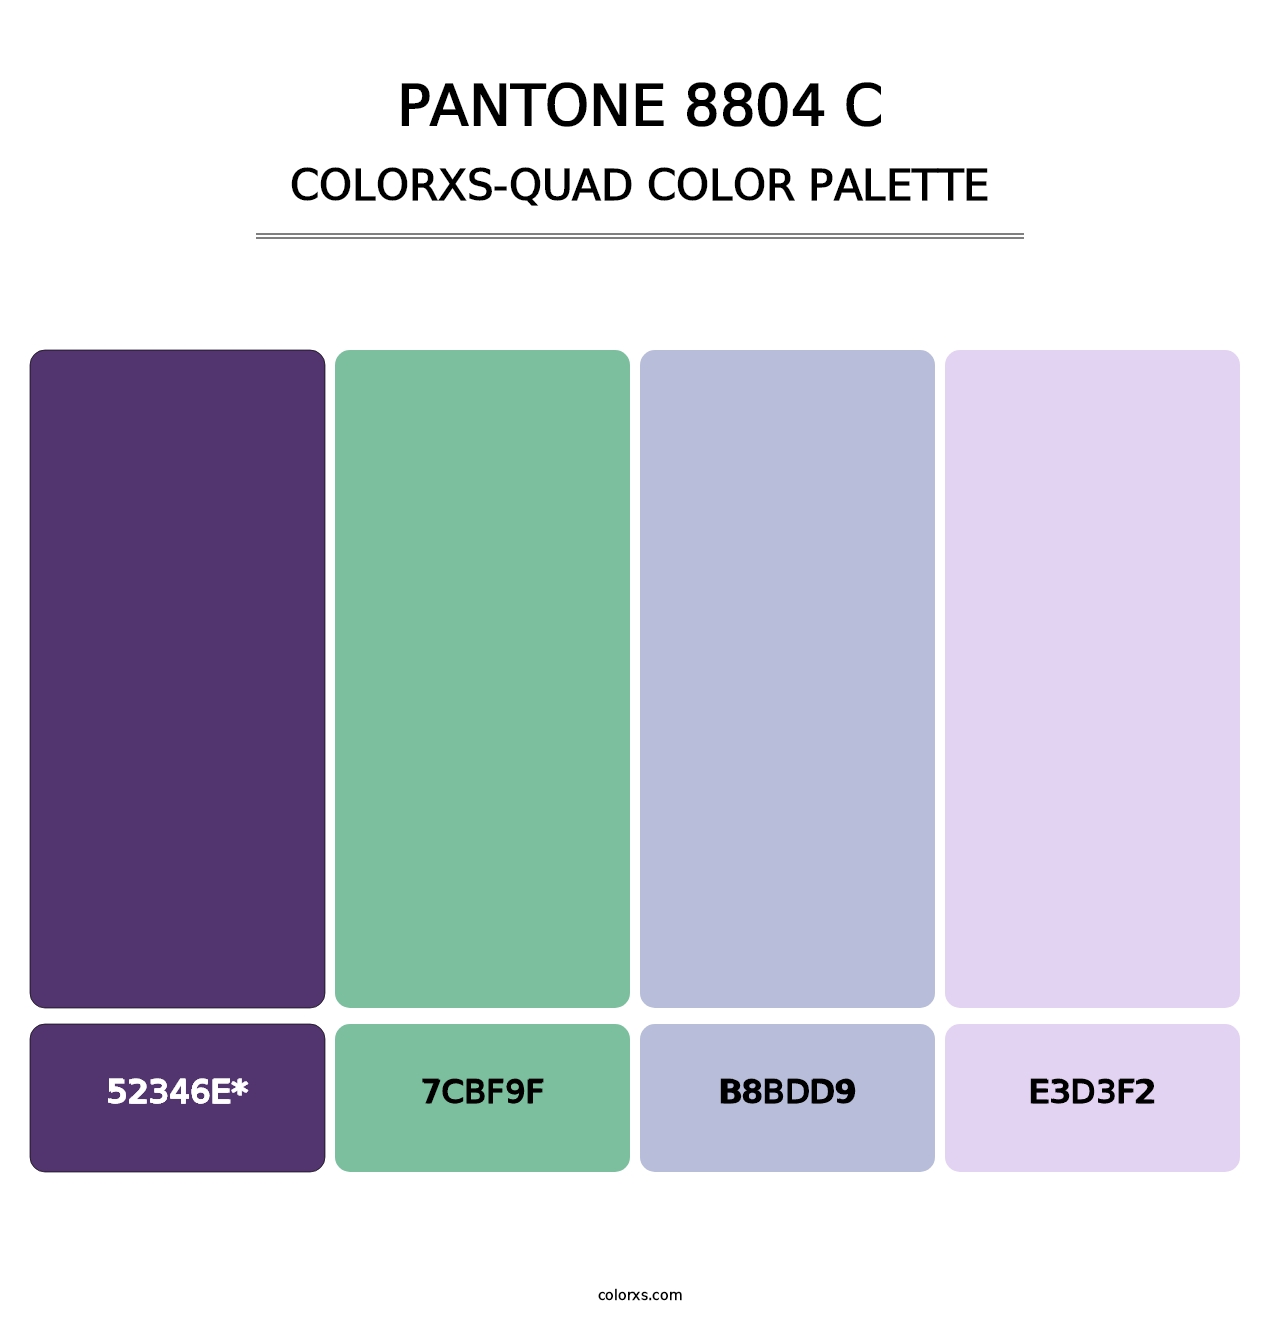 PANTONE 8804 C - Colorxs Quad Palette